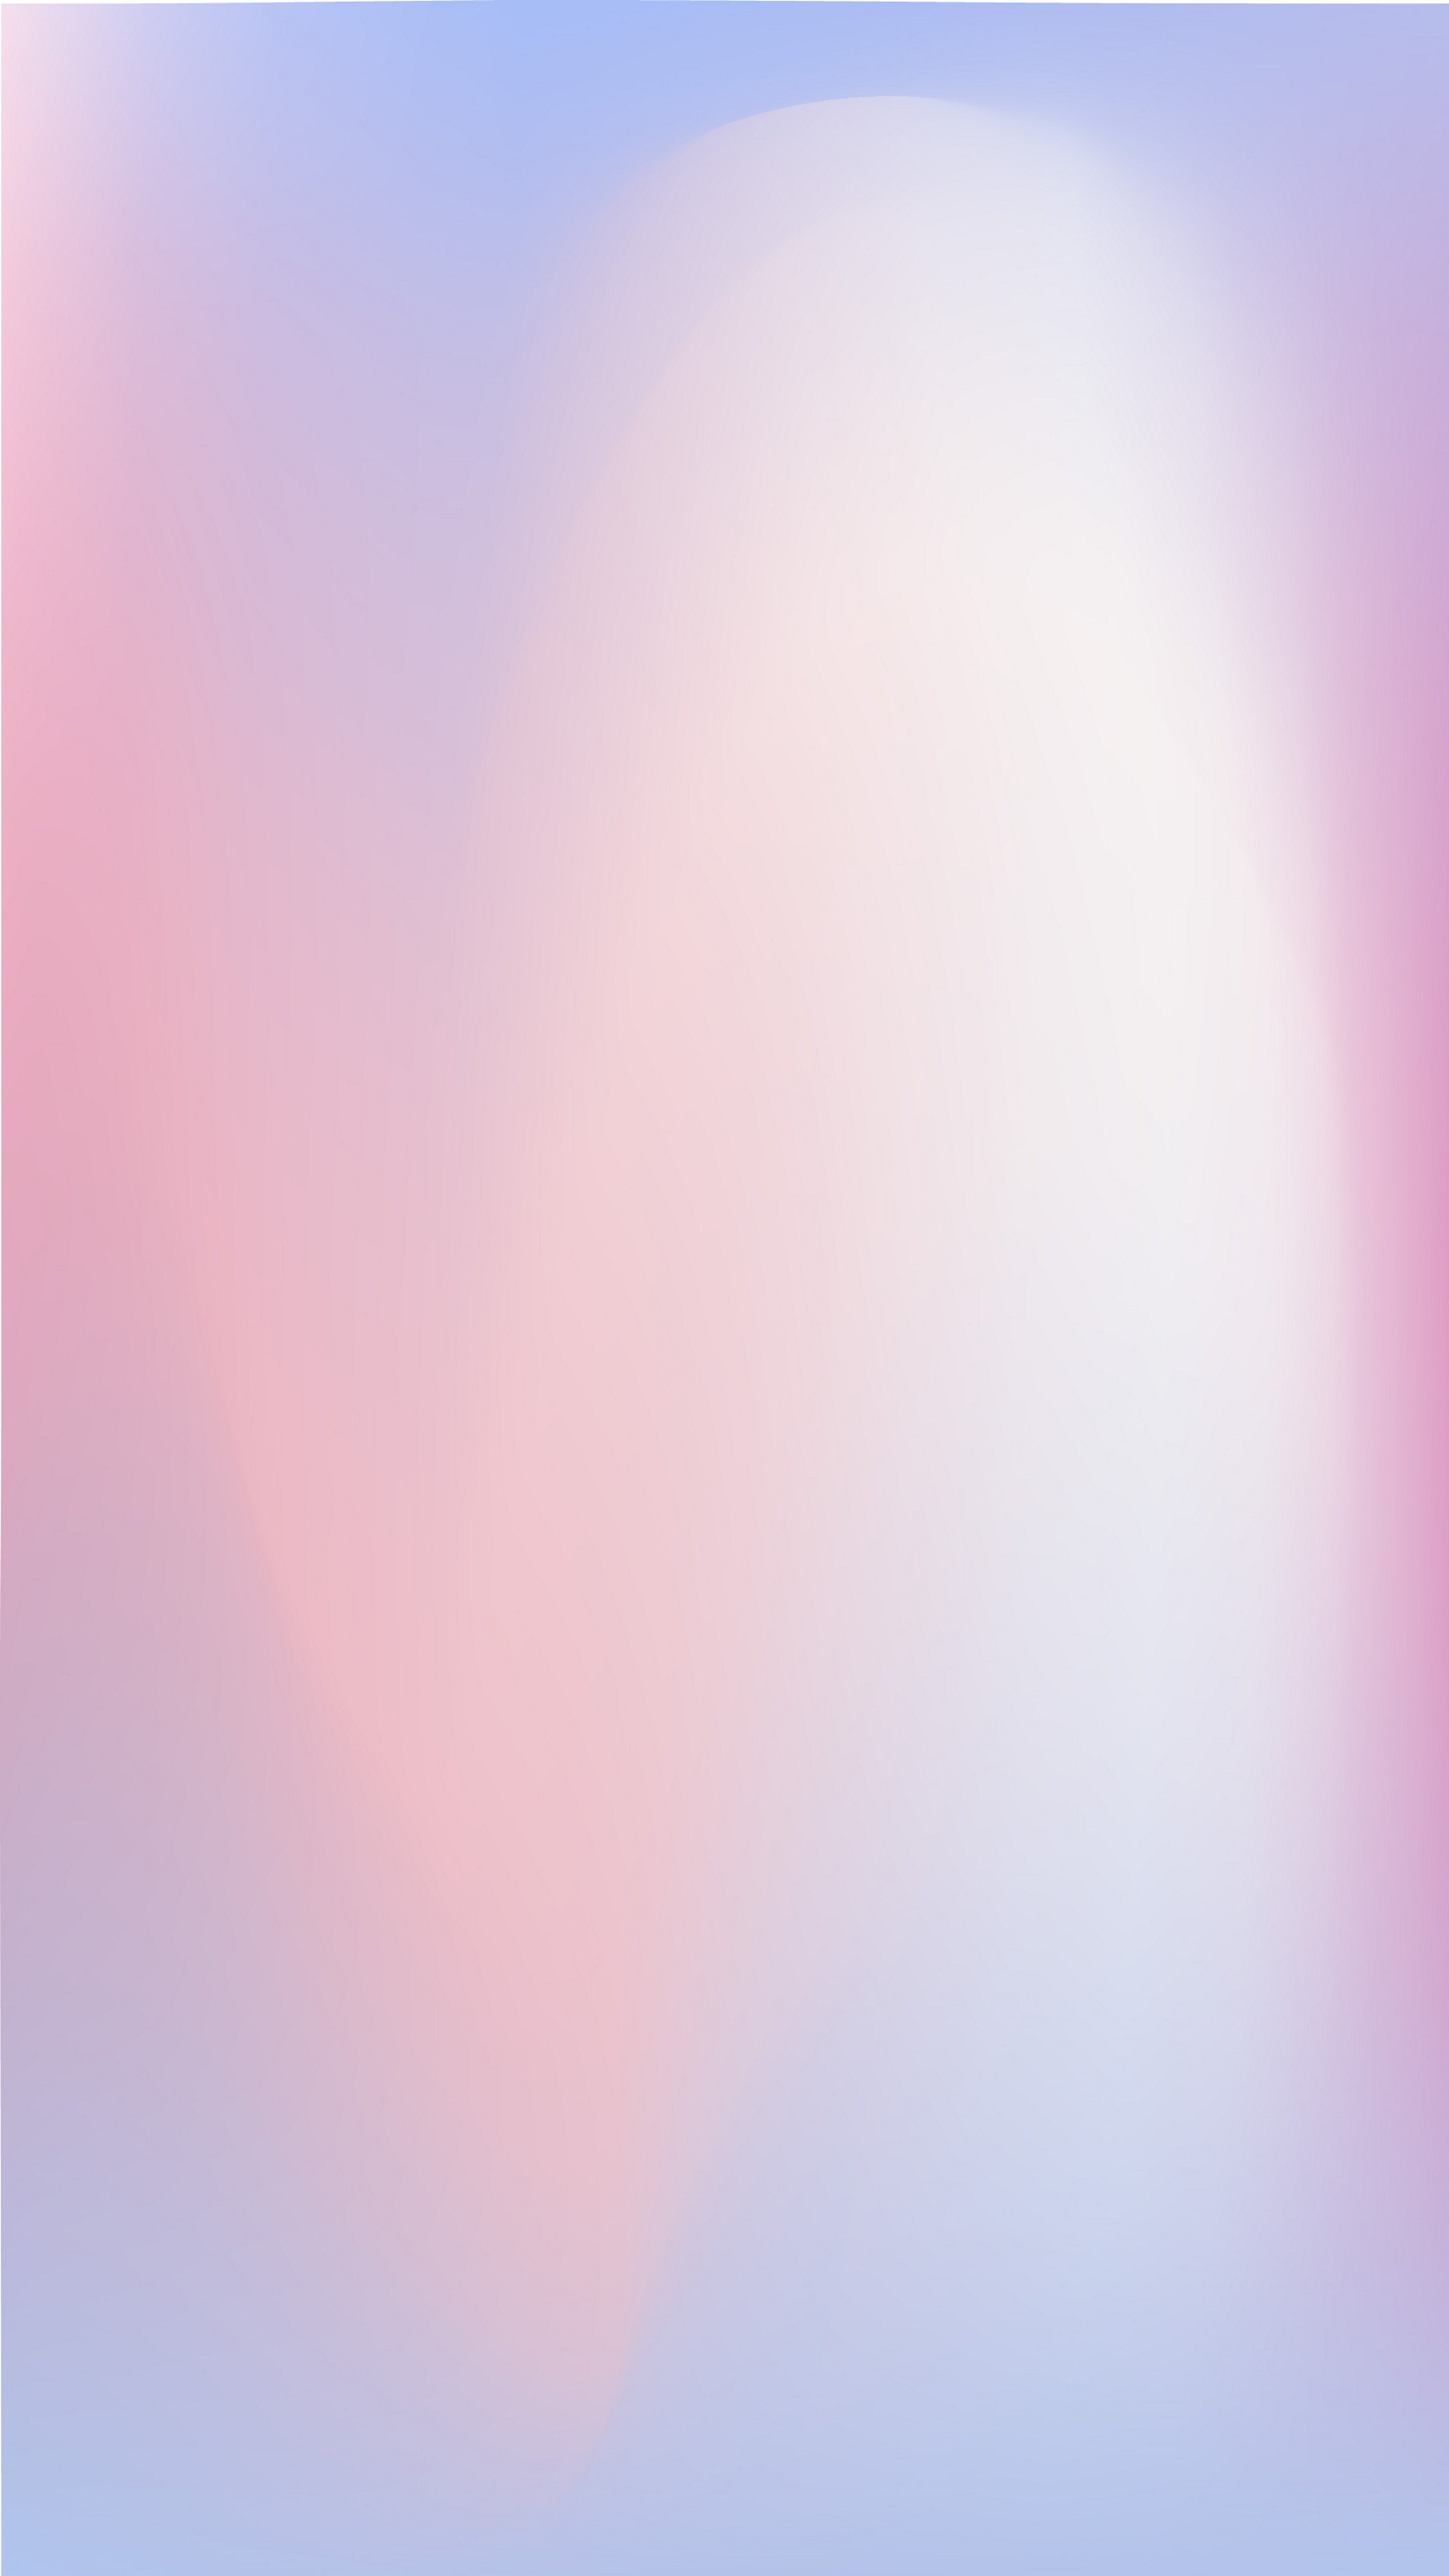 Sunset gradient wallpaper, Warm hues, Evening sky, Calming effect, 2160x3840 4K Phone